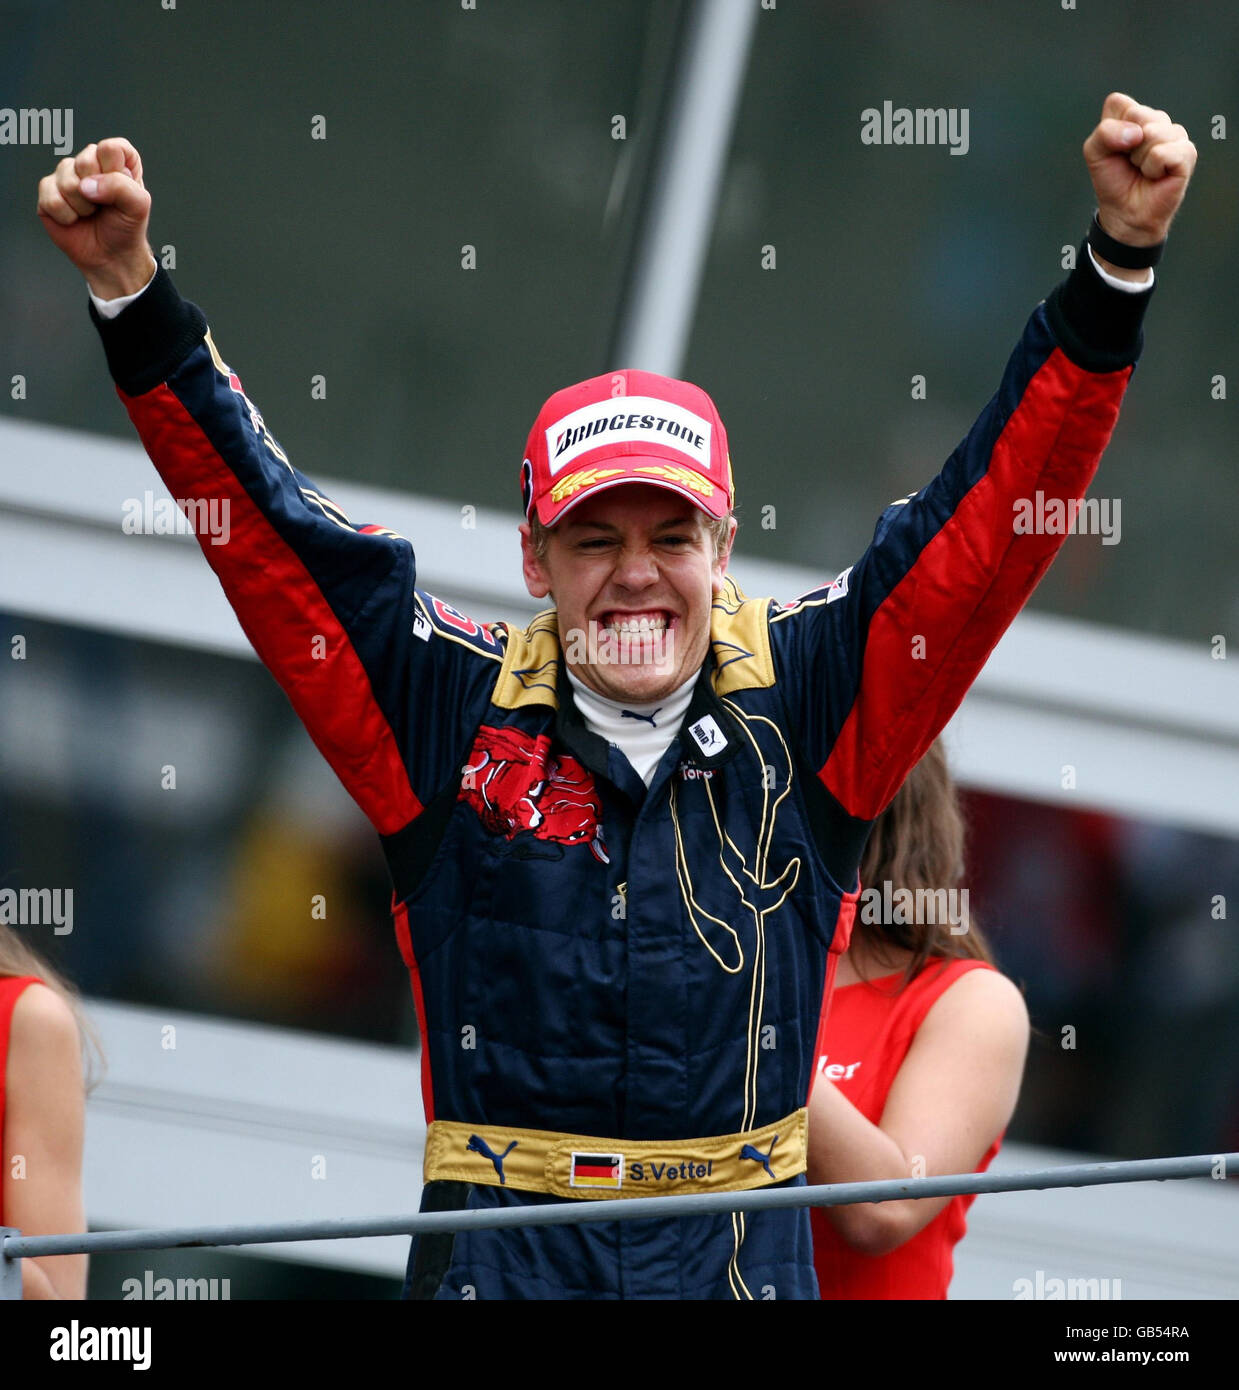 Toro Rosso driver Sebastian Vettel celebrates his victory in the Italian  Grand Prix at Monza, Italy Stock Photo - Alamy